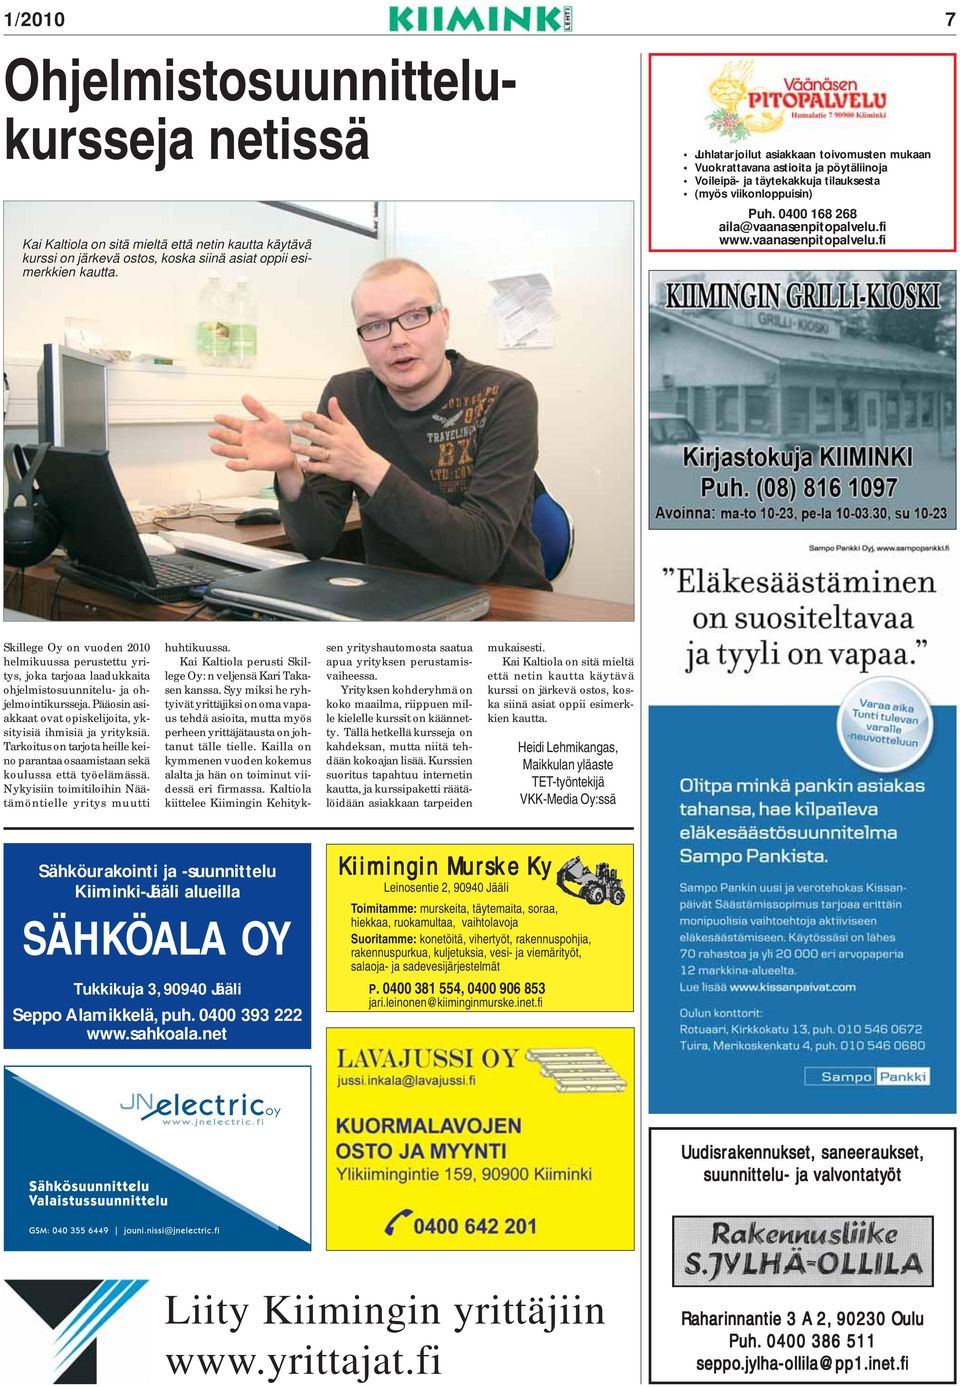 vaanasenpitopalvelu.fi Skillege Oy on vuoden 2010 helmikuussa perustettu yritys, joka tarjoaa laadukkaita ohjelmistosuunnitelu- ja ohjelmointikursseja.